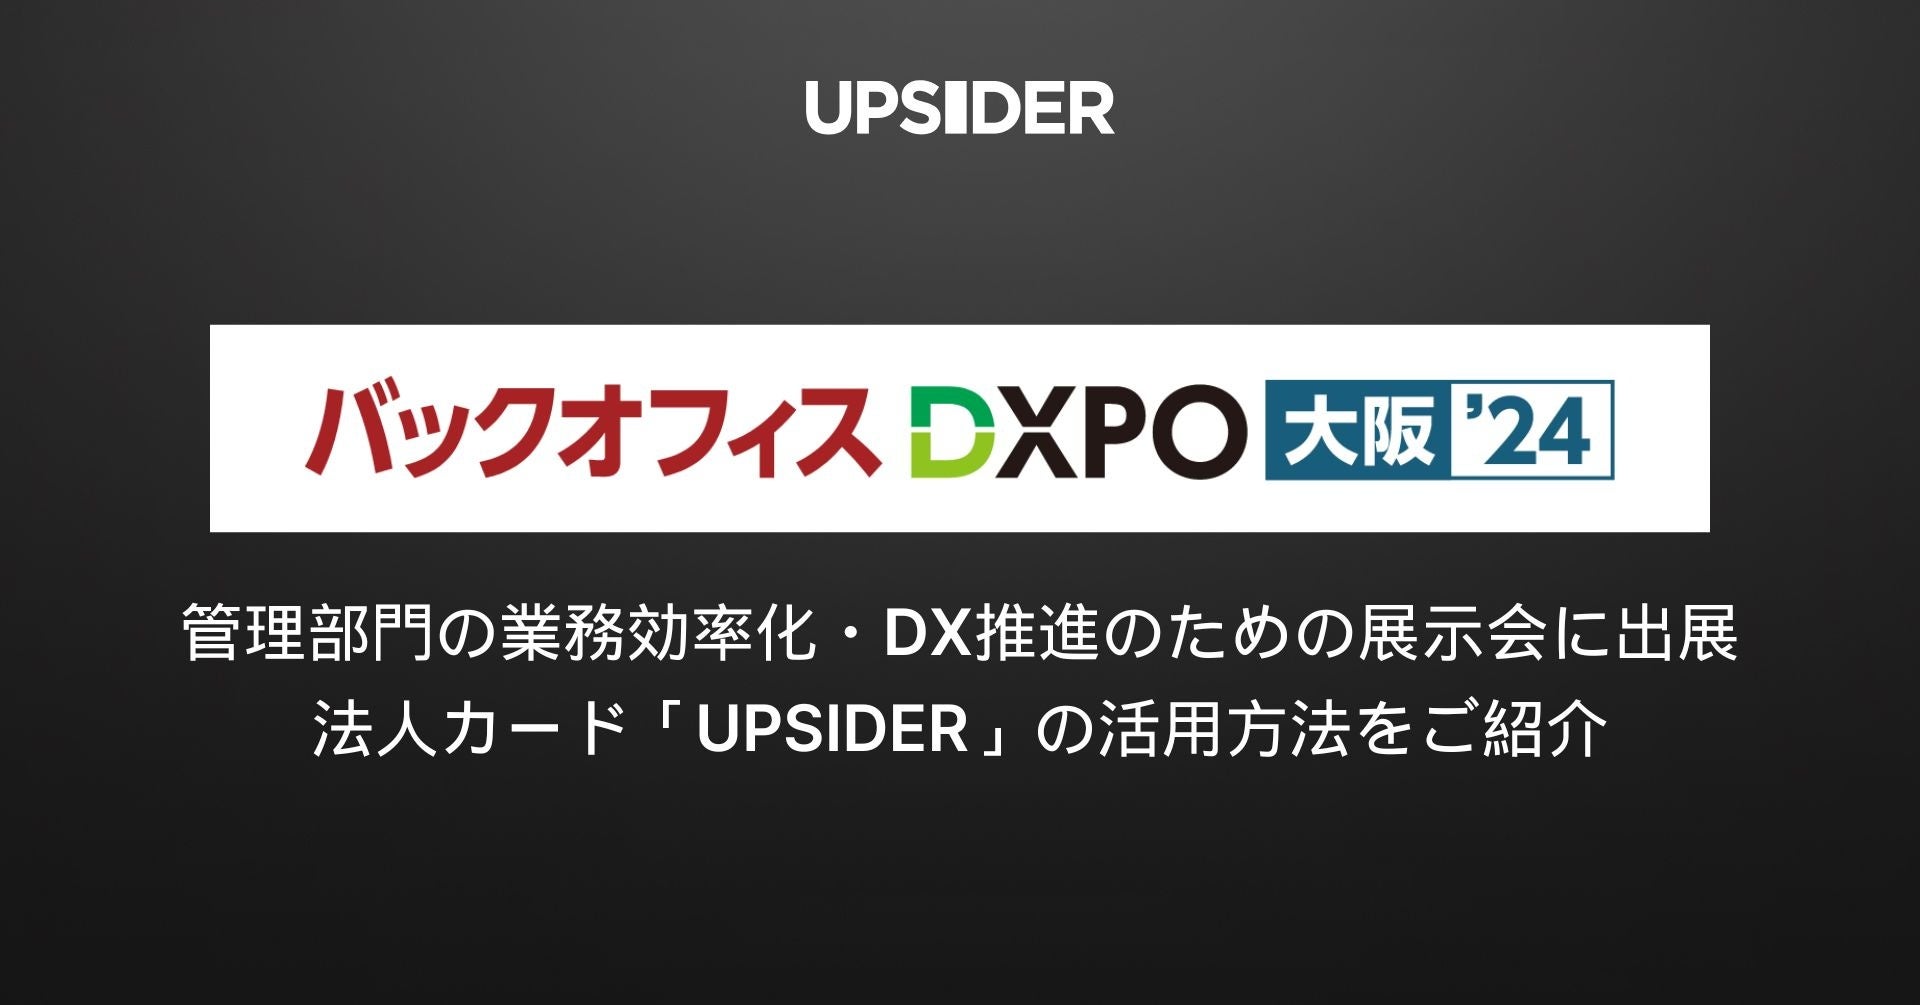 UPSIDER、管理部門の業務効率化・DX推進のための展示会「第2回 バックオフィスDXPO大阪’24」に出展